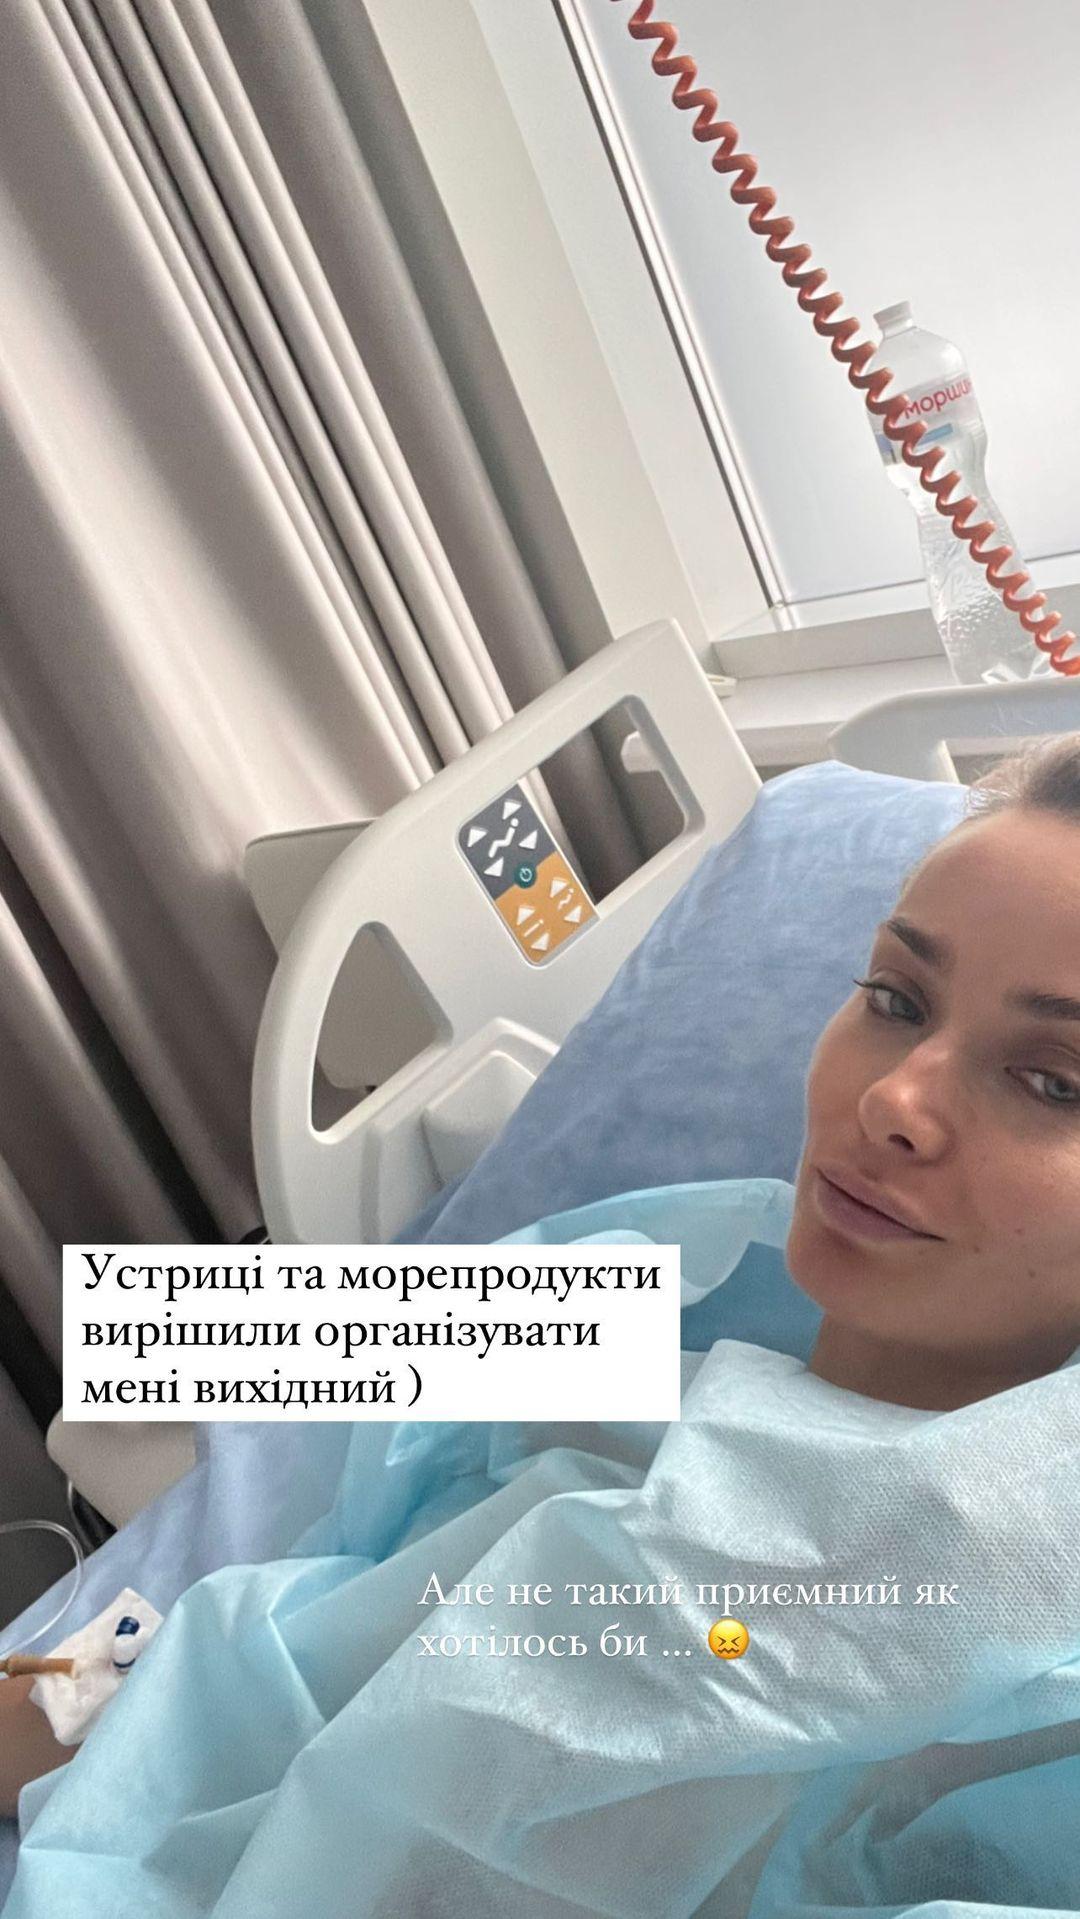 Актрисі стало зле через отруєння / instagram.com/misha.k.ua